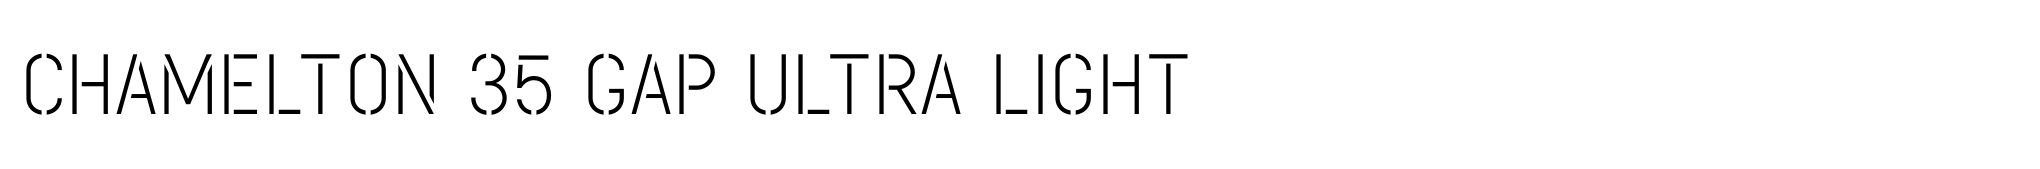 Chamelton 35 Gap Ultra Light image